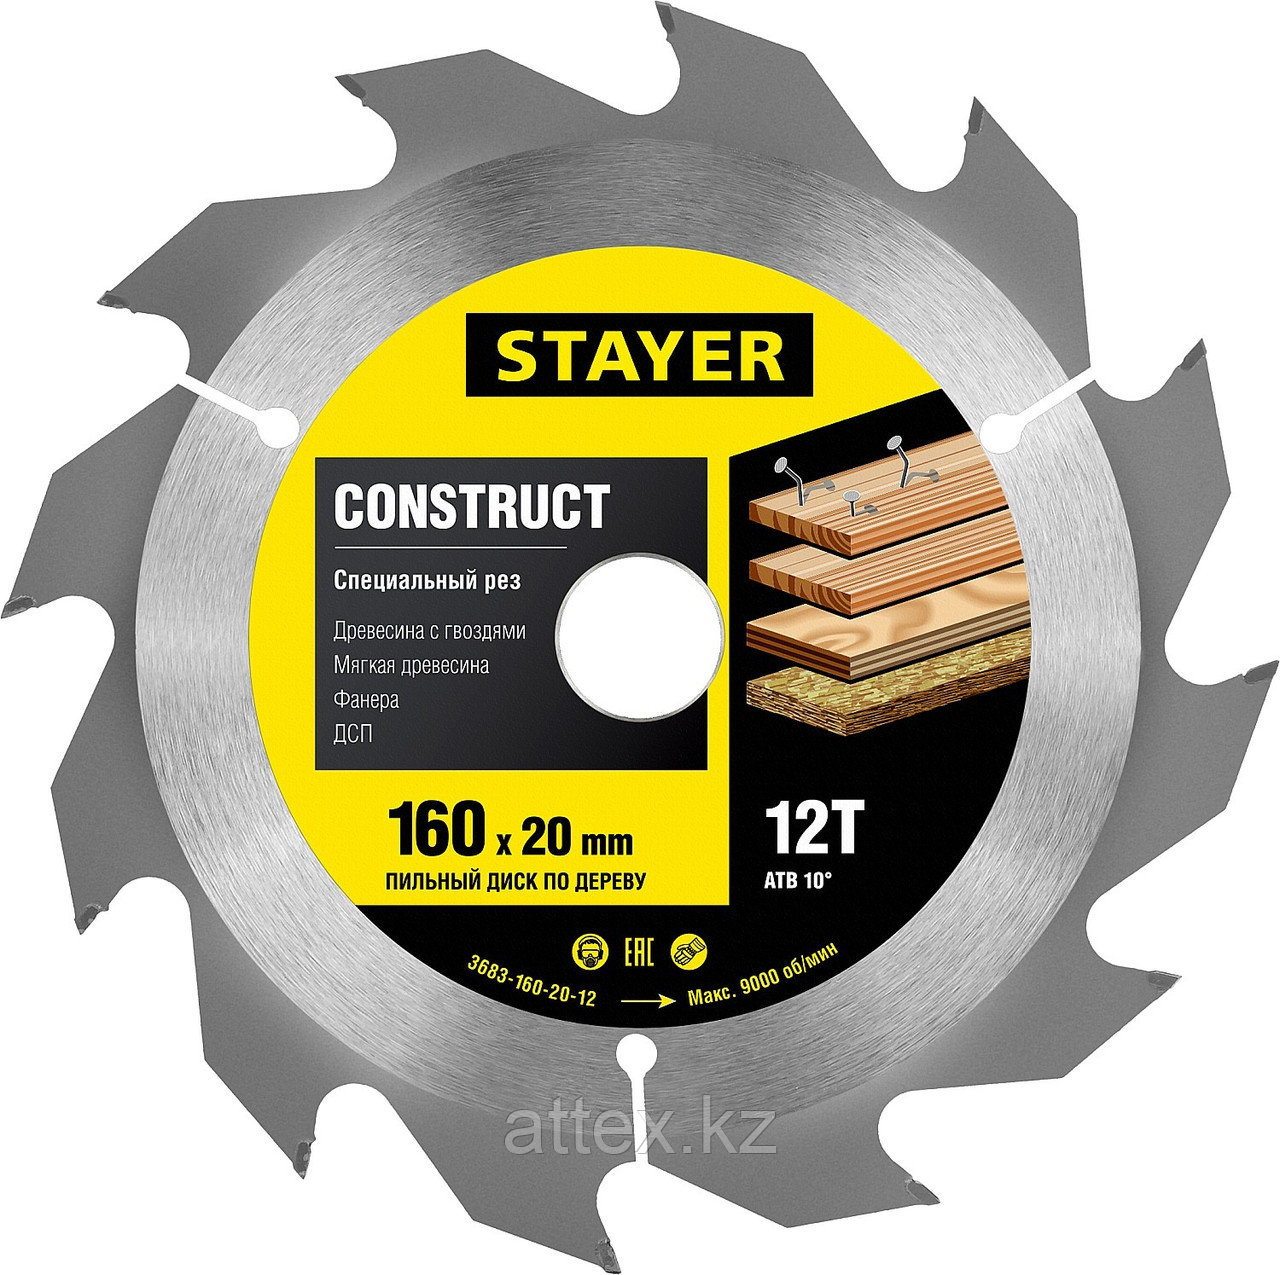 Пильный диск "Construct line" для древесины с гвоздями, 160x20, 12Т, STAYER  3683-160-20-12